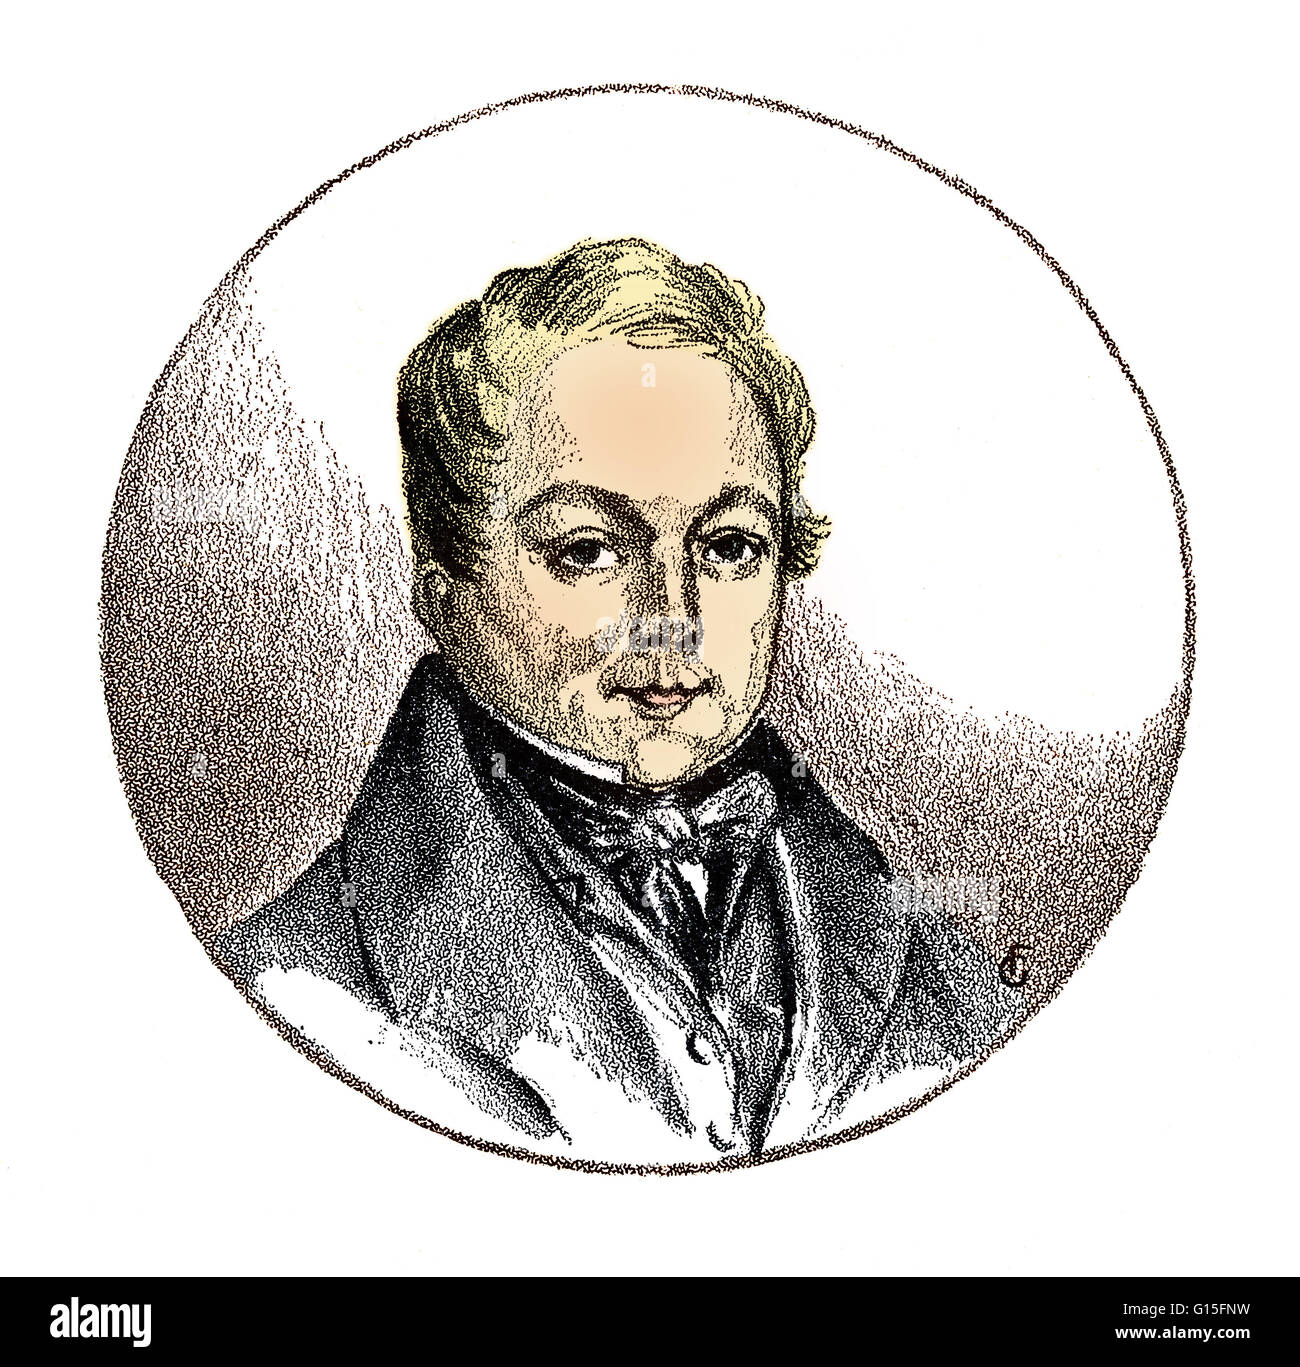 Gravure de Magendie de 1822. François Magendie (1783-1855) était un physiologiste français, considéré comme un pionnier de la physiologie expérimentale. Il est connu pour décrire le foramen de Magendie. Sa plus importante contribution à la science était aussi son plus dis Banque D'Images